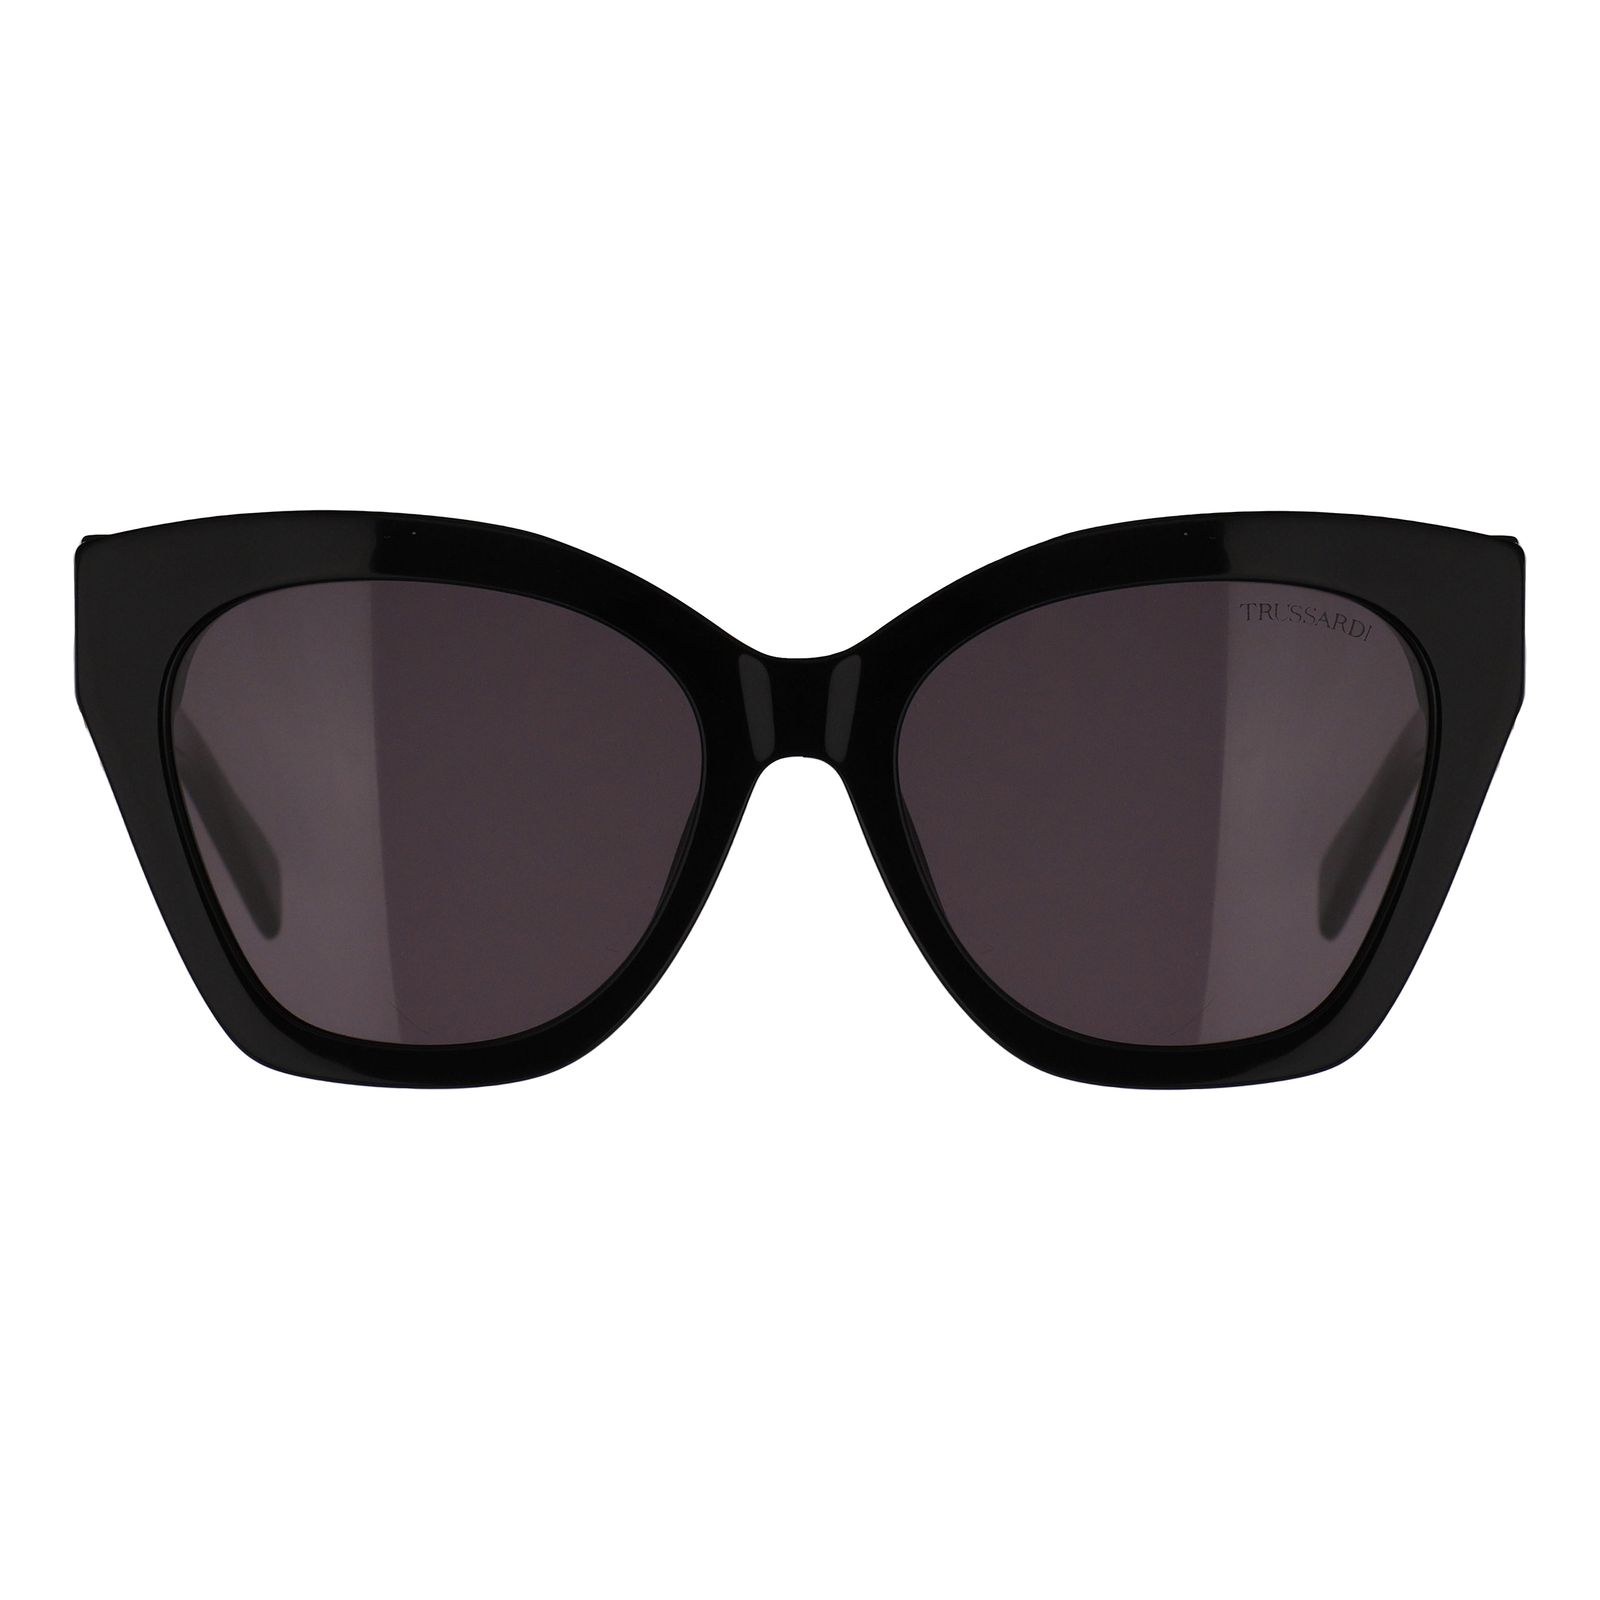 عینک آفتابی زنانه تروساردی مدل STR580-700 -  - 1